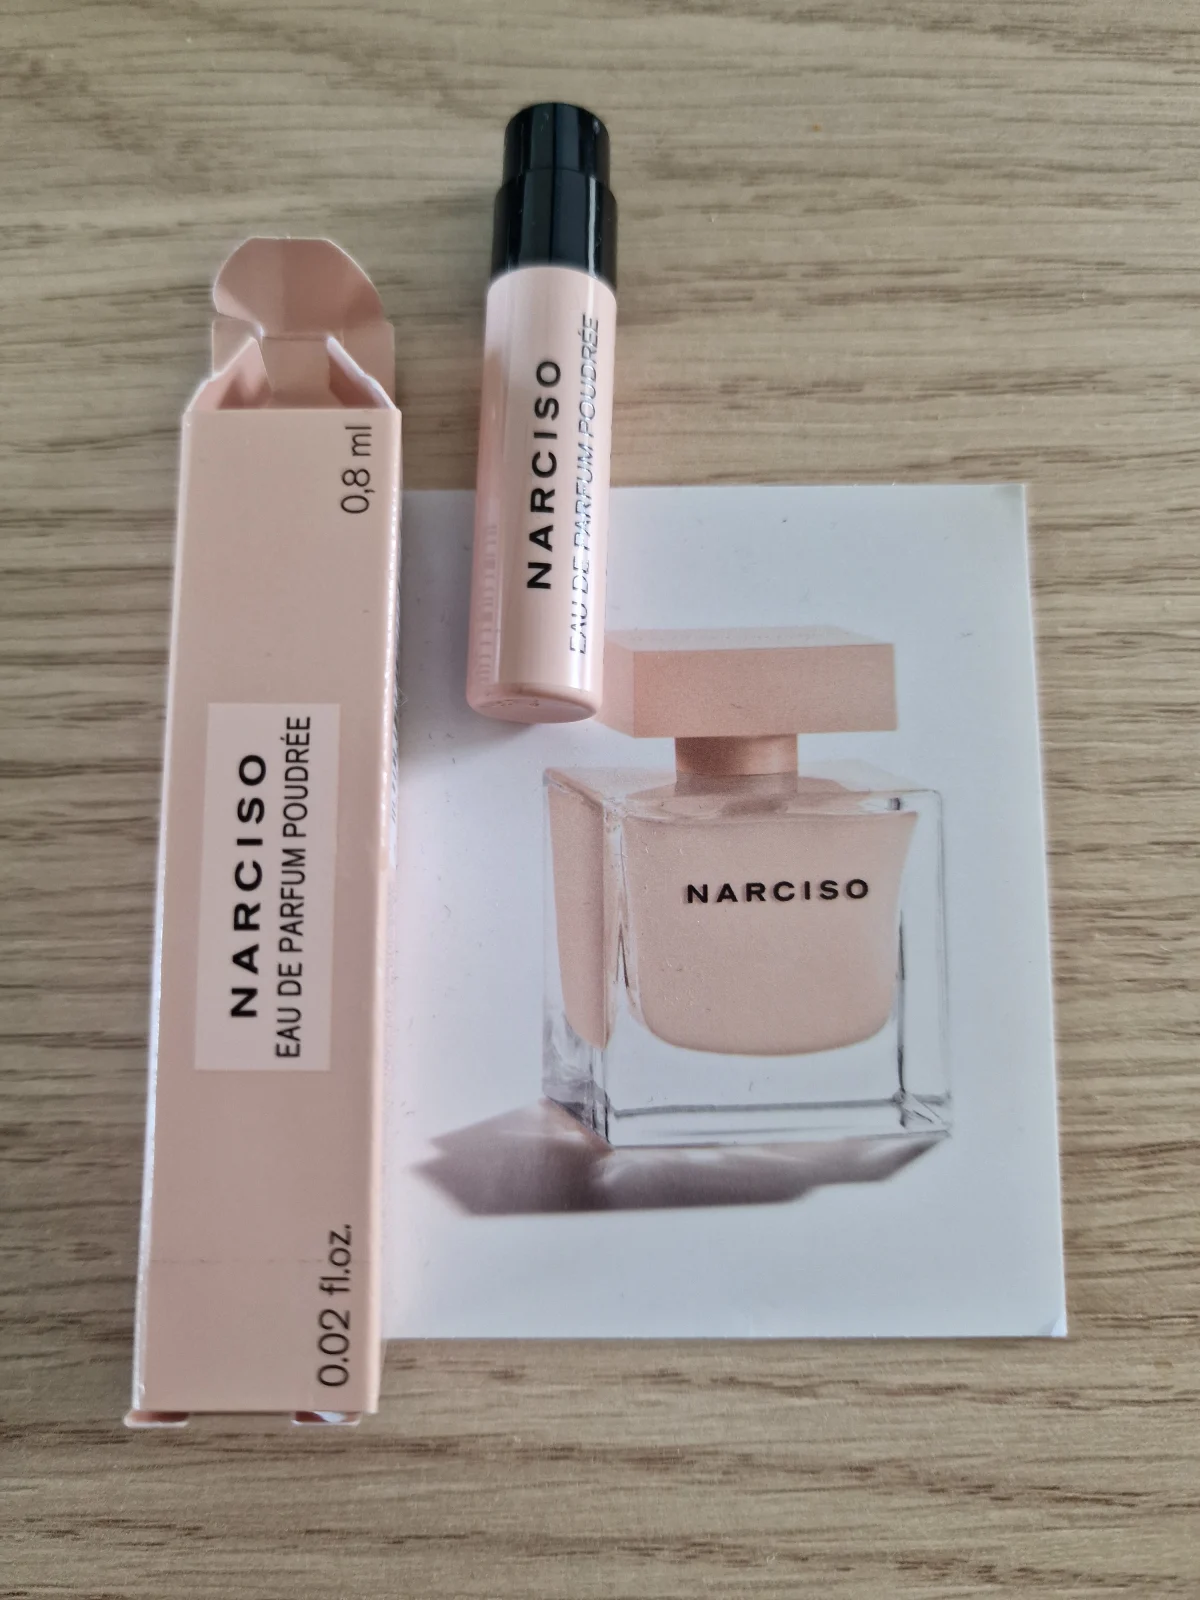 Narciso Rodriguez Narciso Poudrée Eau de Parfum - before review image